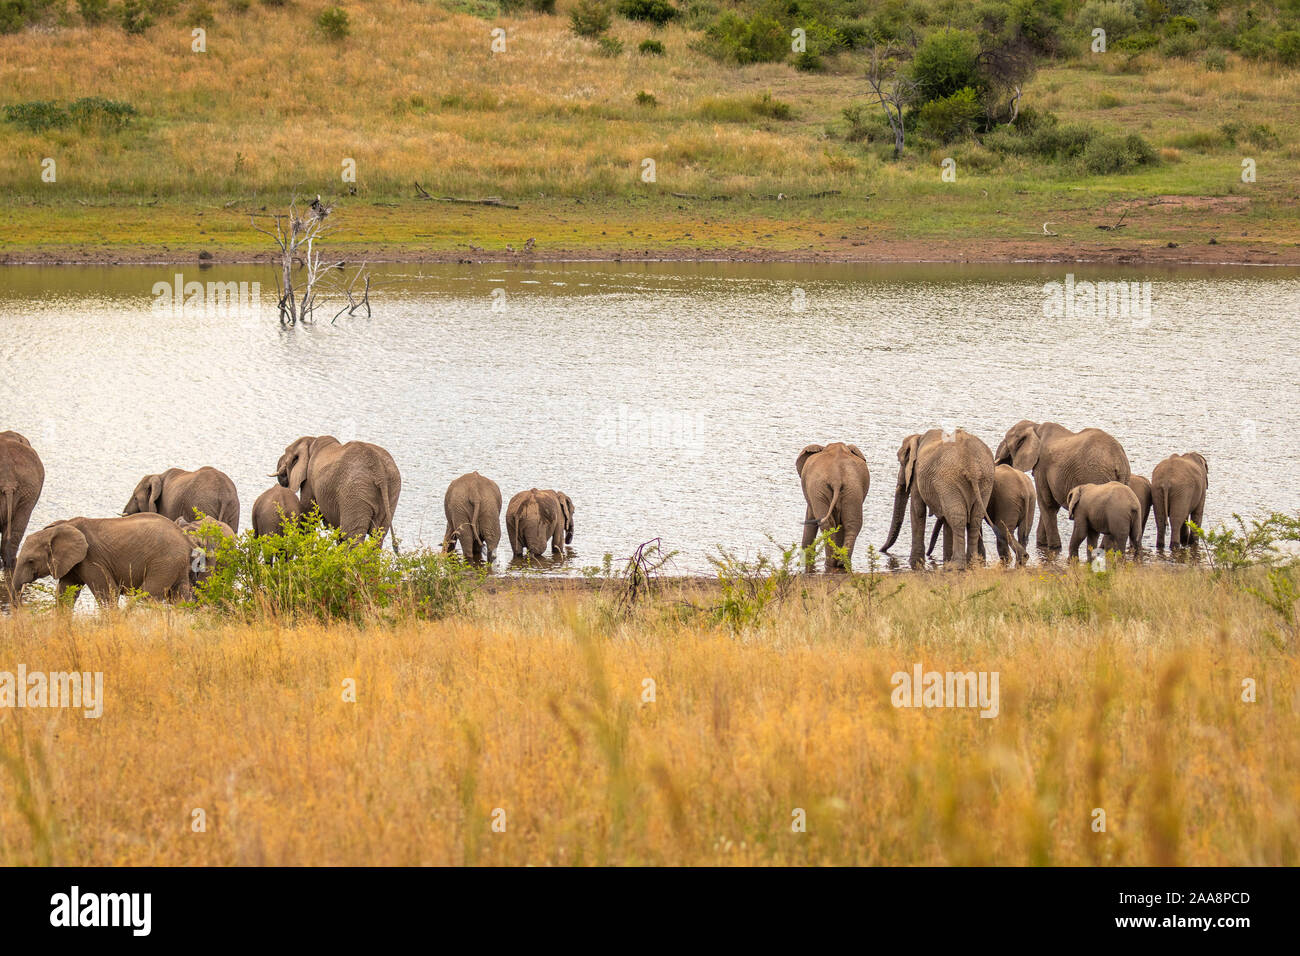 Famiglia di elefanti africani a bere un waterhole, Parco Nazionale di Pilanesberg, Sud Africa. Foto Stock